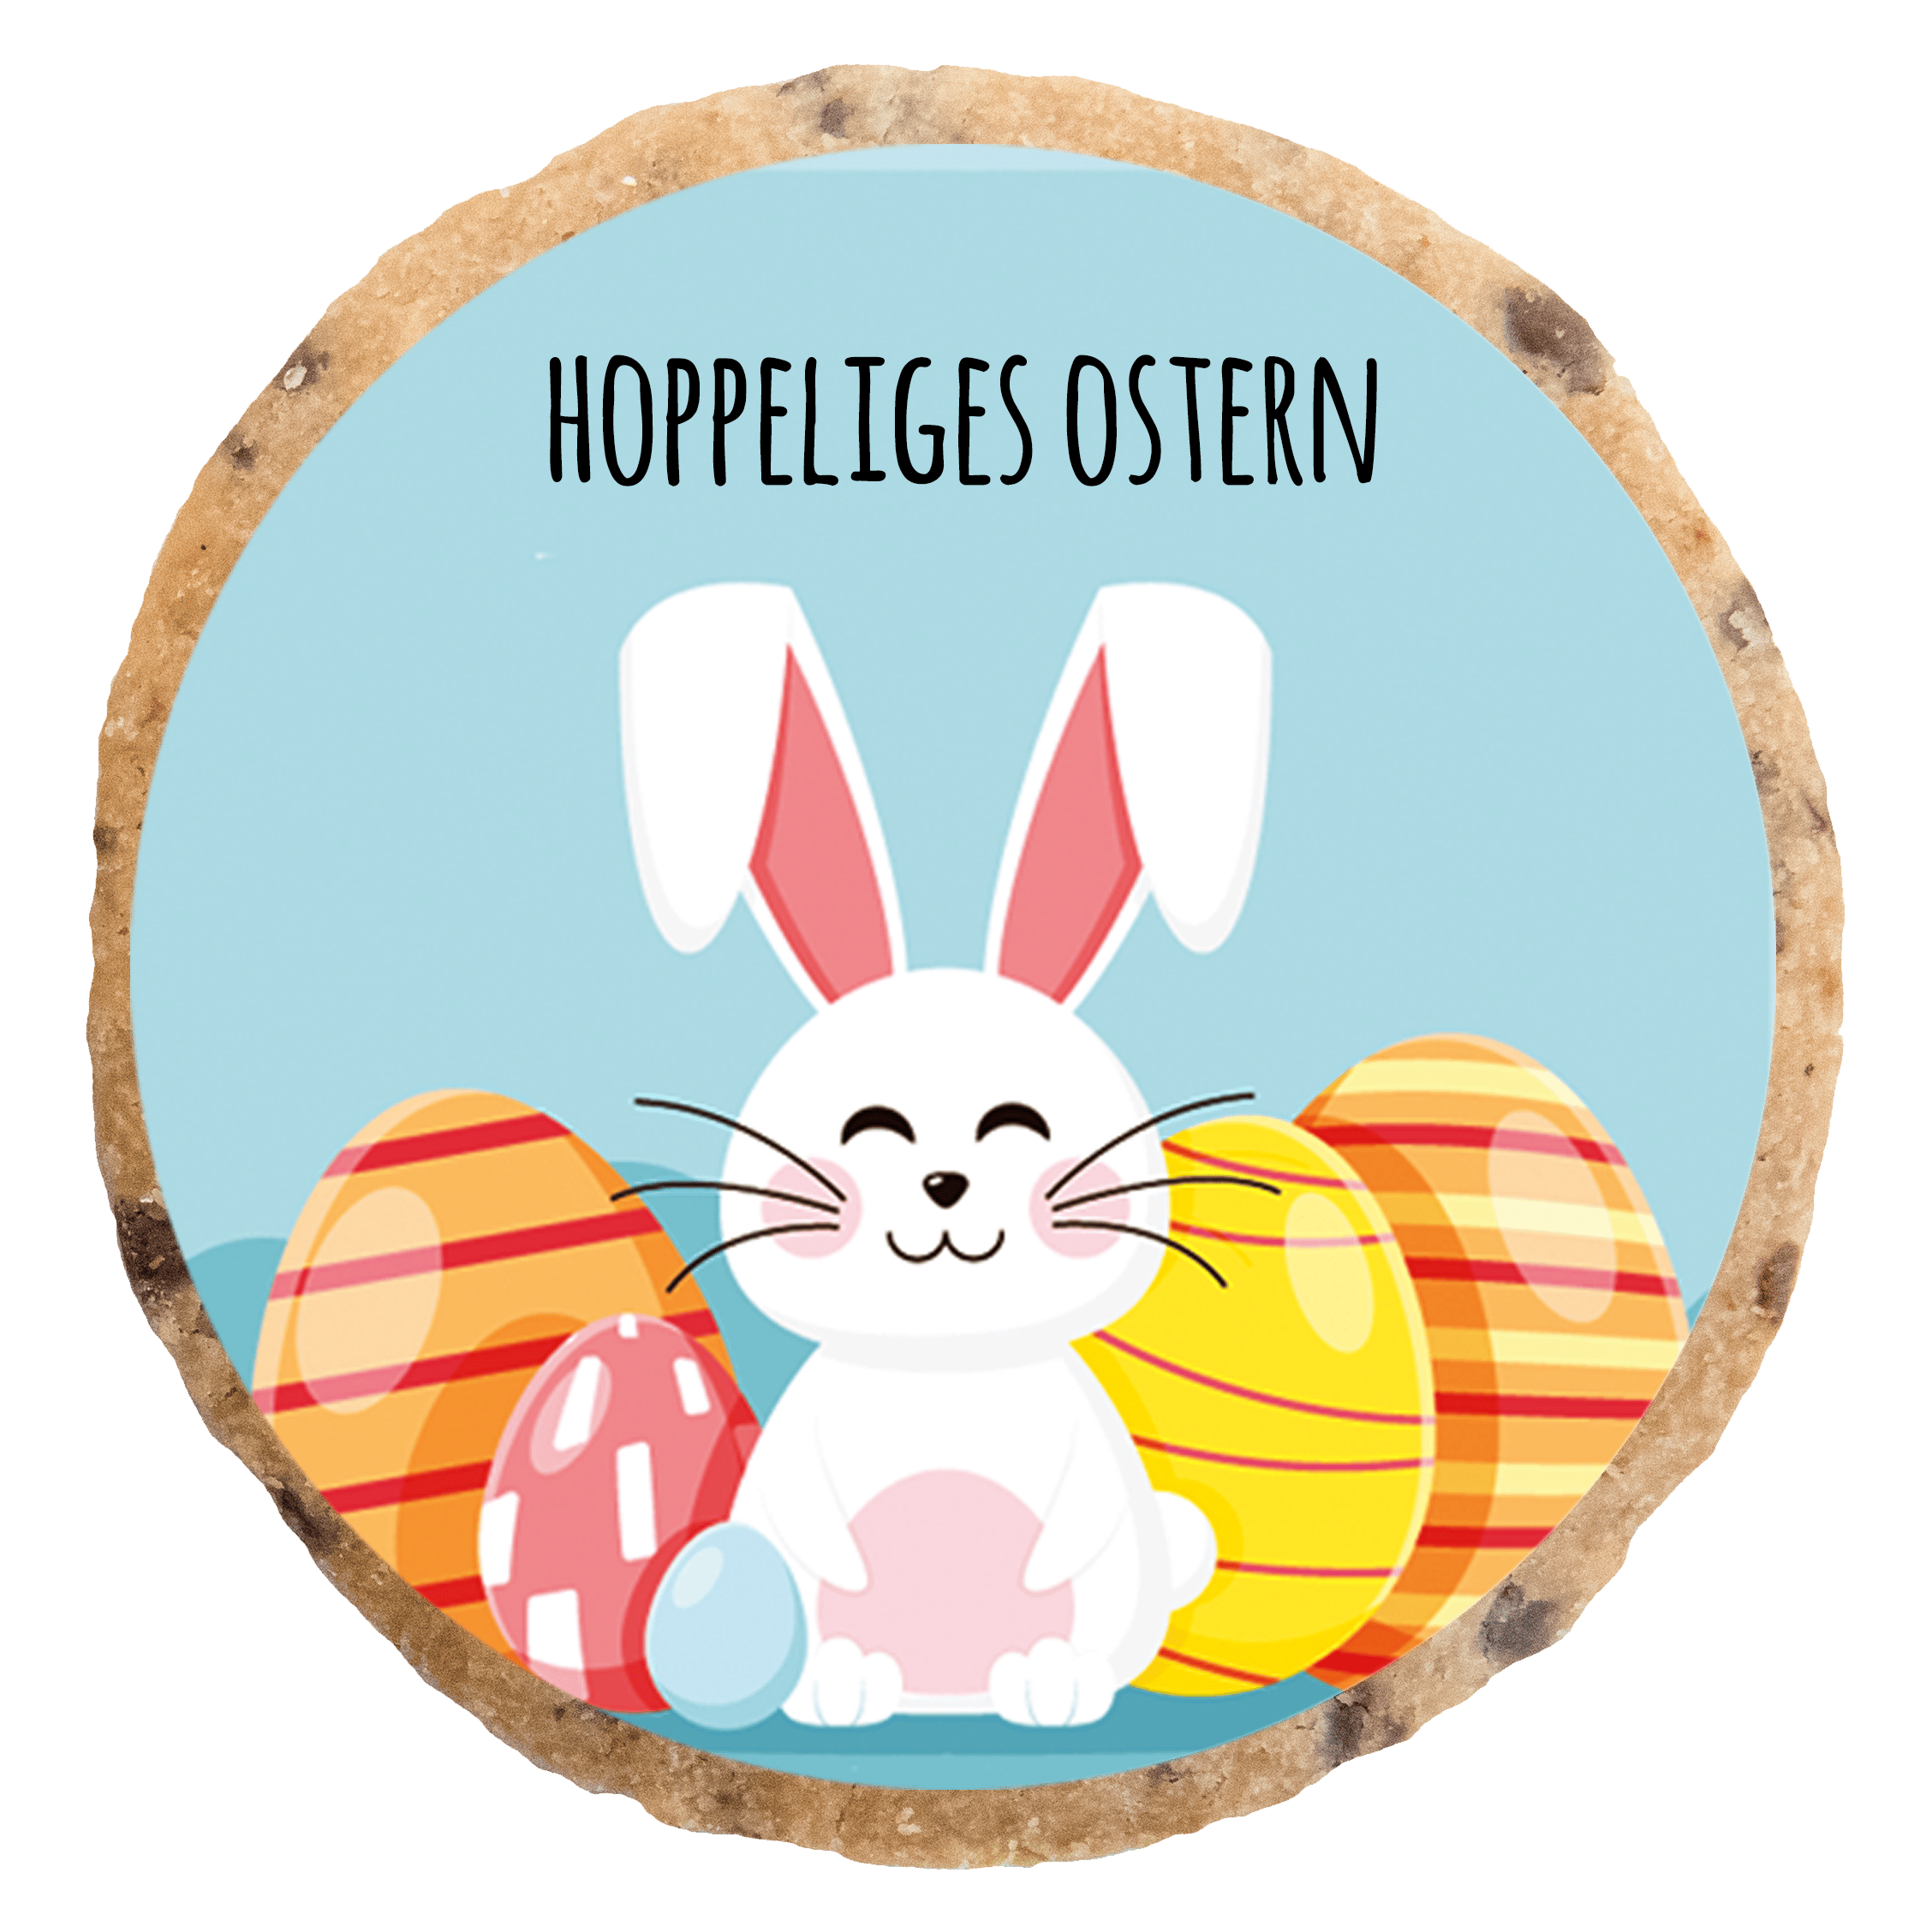 "Hoppeliges Ostern" MotivKEKS